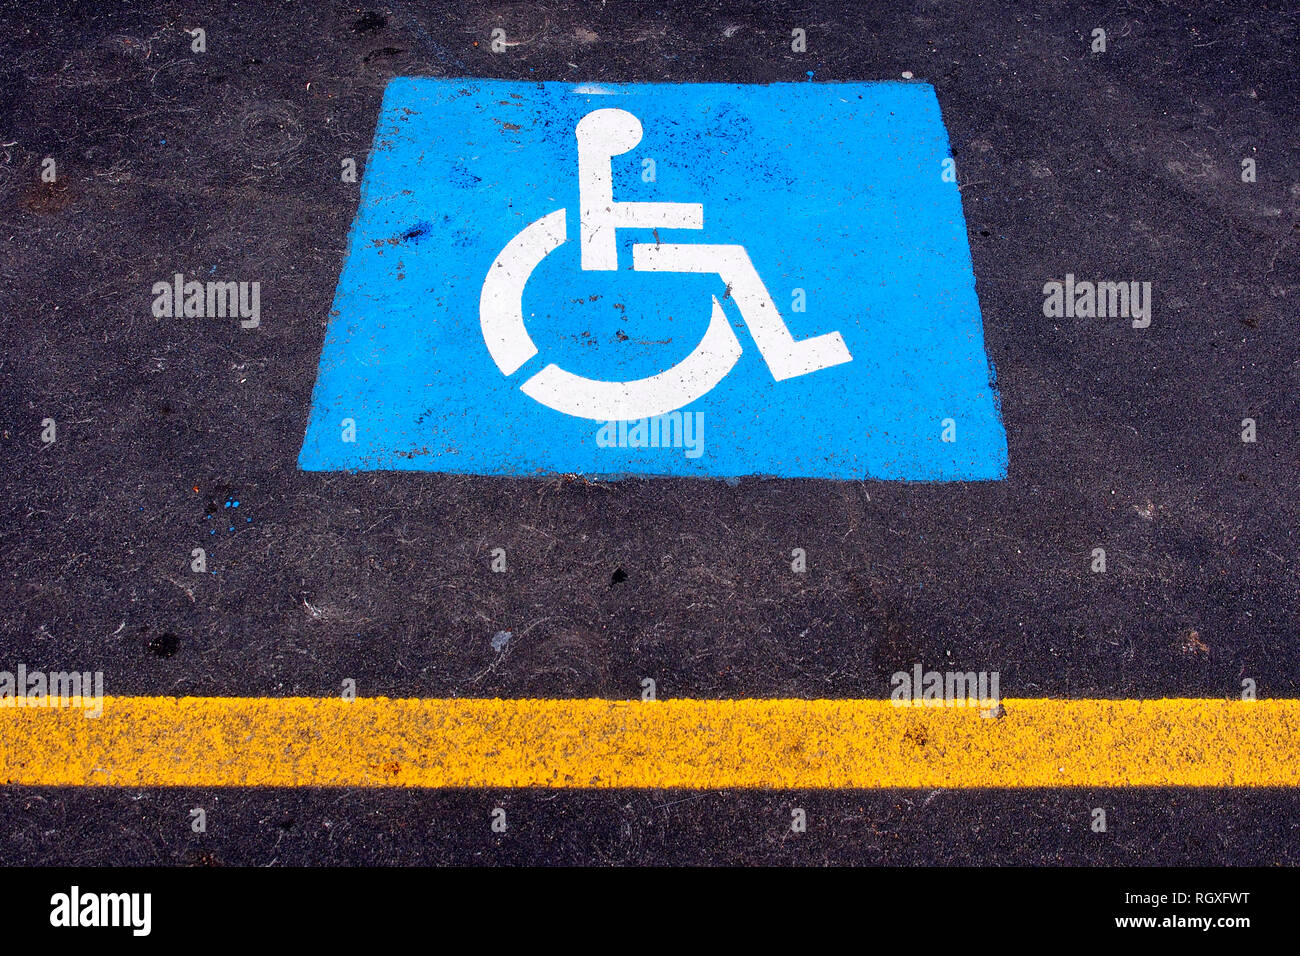 Parcheggio riservato ai portatori di handicap. Stampa di segno sull'asfalto. Foto Stock